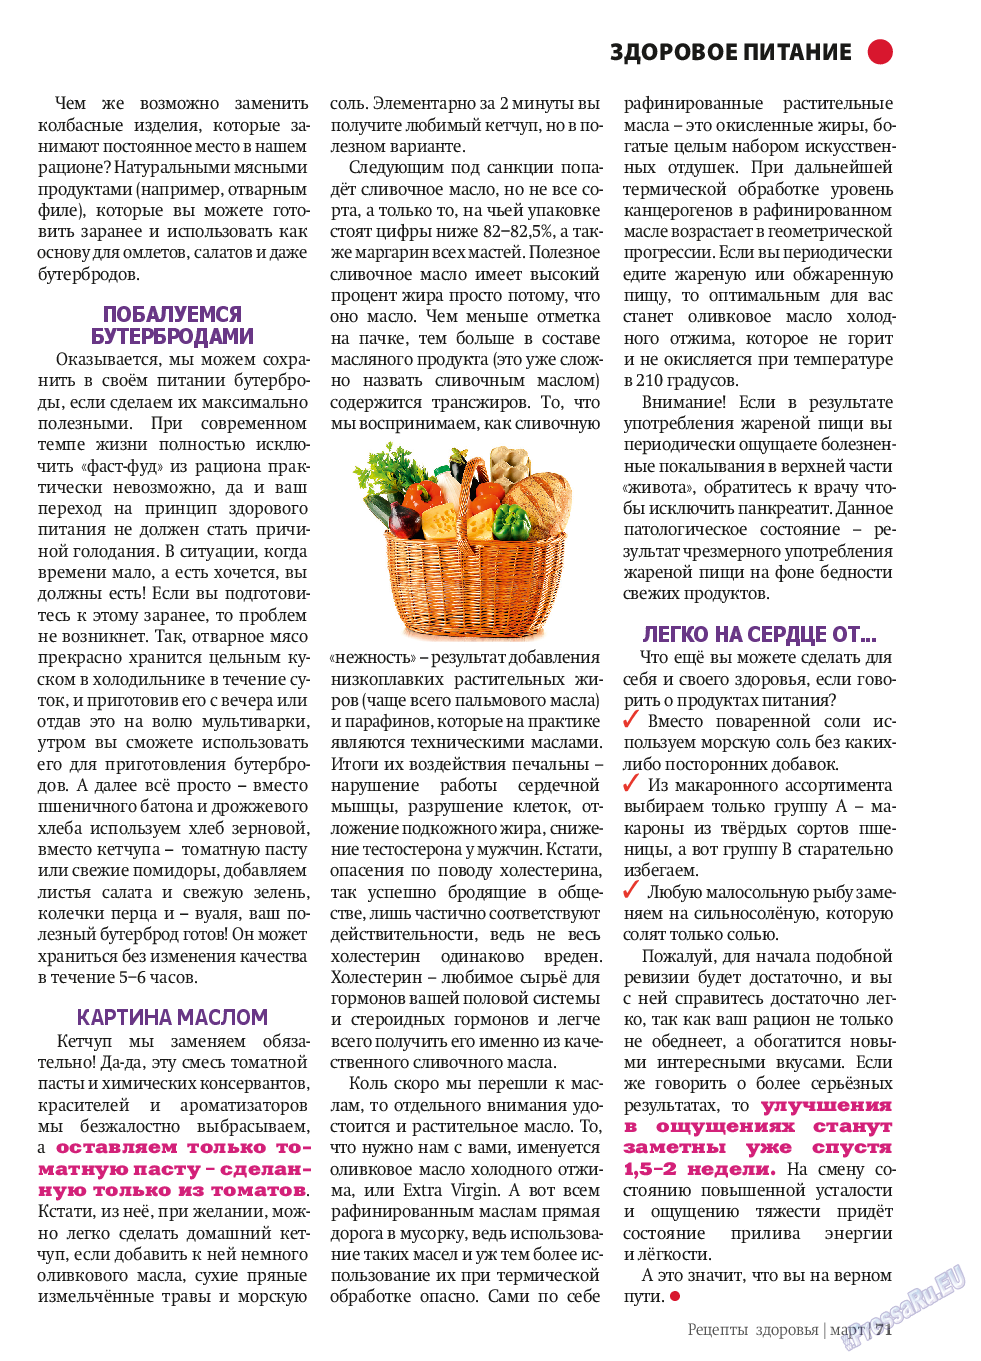 Рецепты здоровья (журнал). 2014 год, номер 58, стр. 71